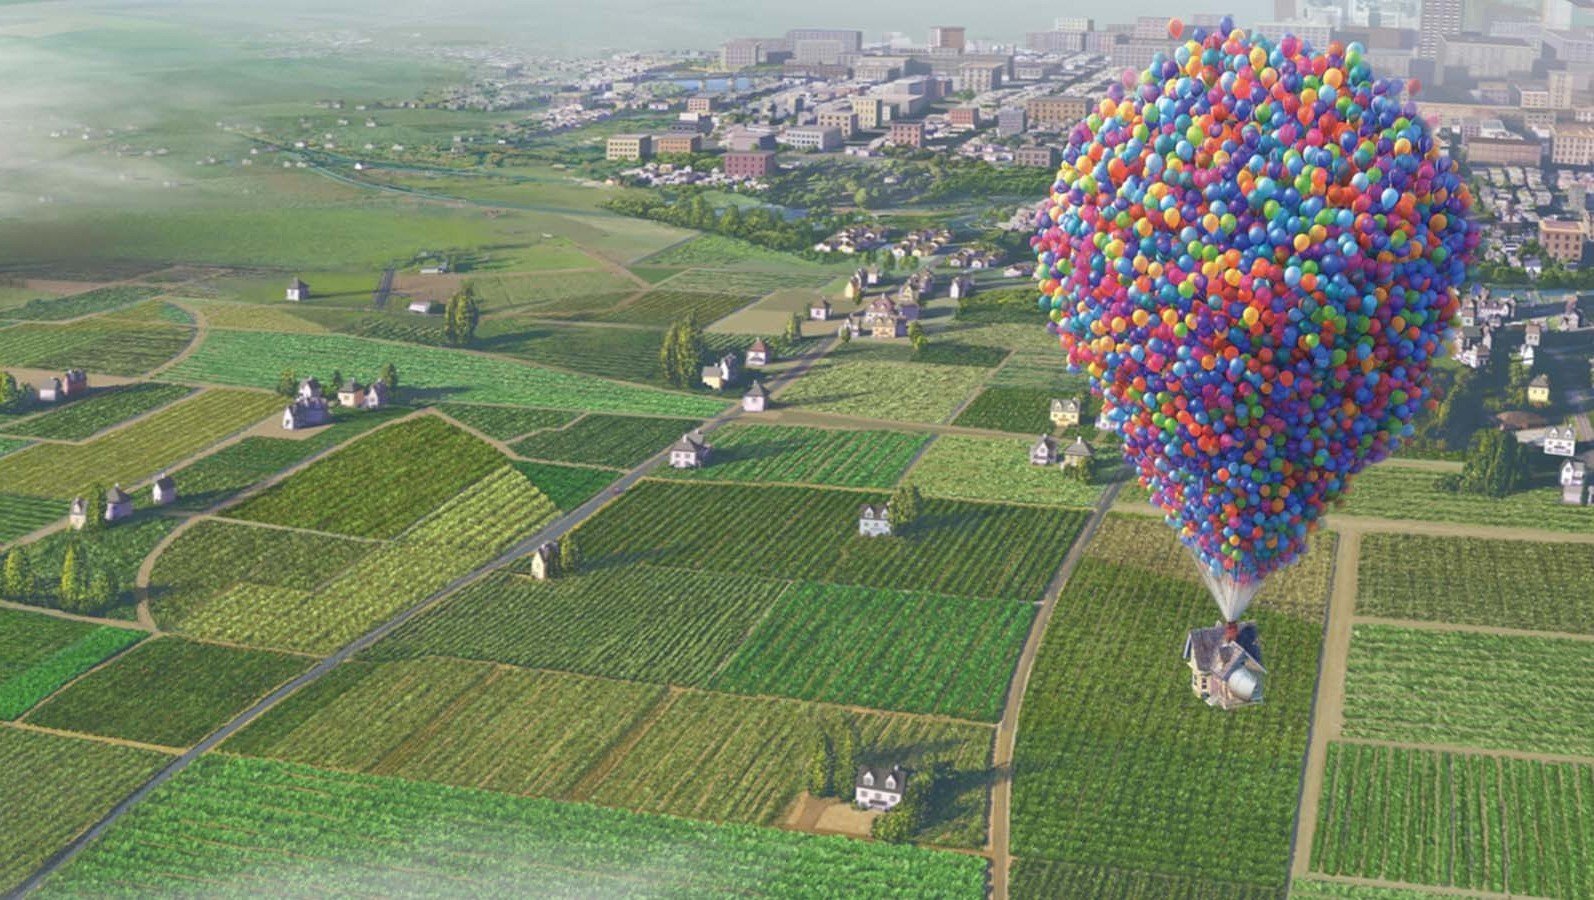 Дом на воздушных шариках. Воздушный шар. Домик на воздушных шариках. Вверх шарики. Доом на воздушныхшарах.